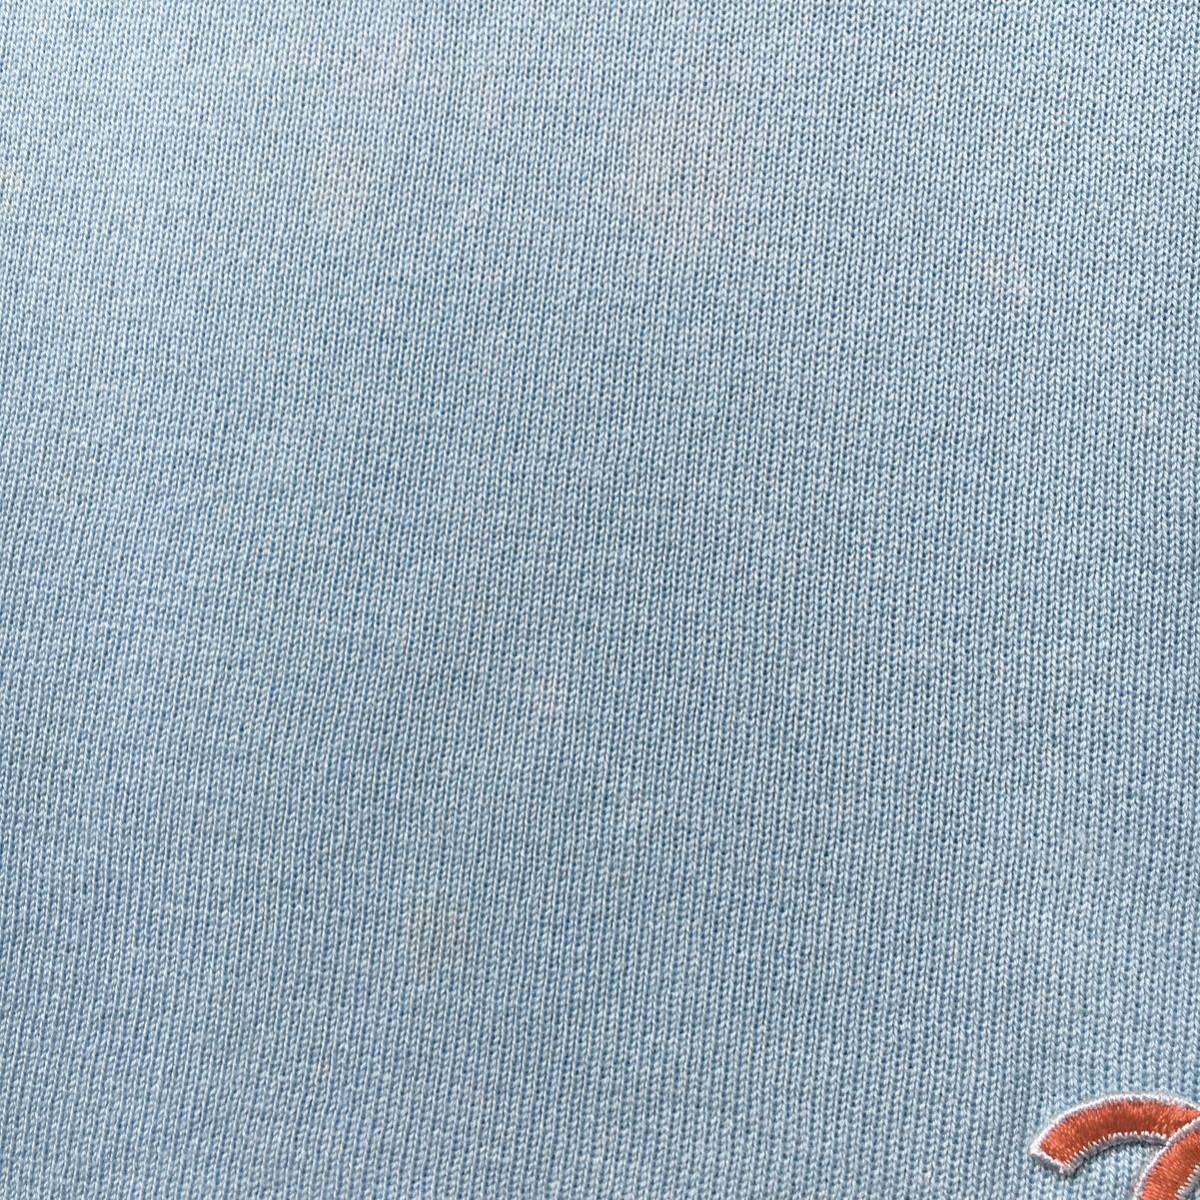 CHANEL シャネル ココマーク コットン ストレッチ トップス Tシャツ 送料無料 クリーニング済の画像5